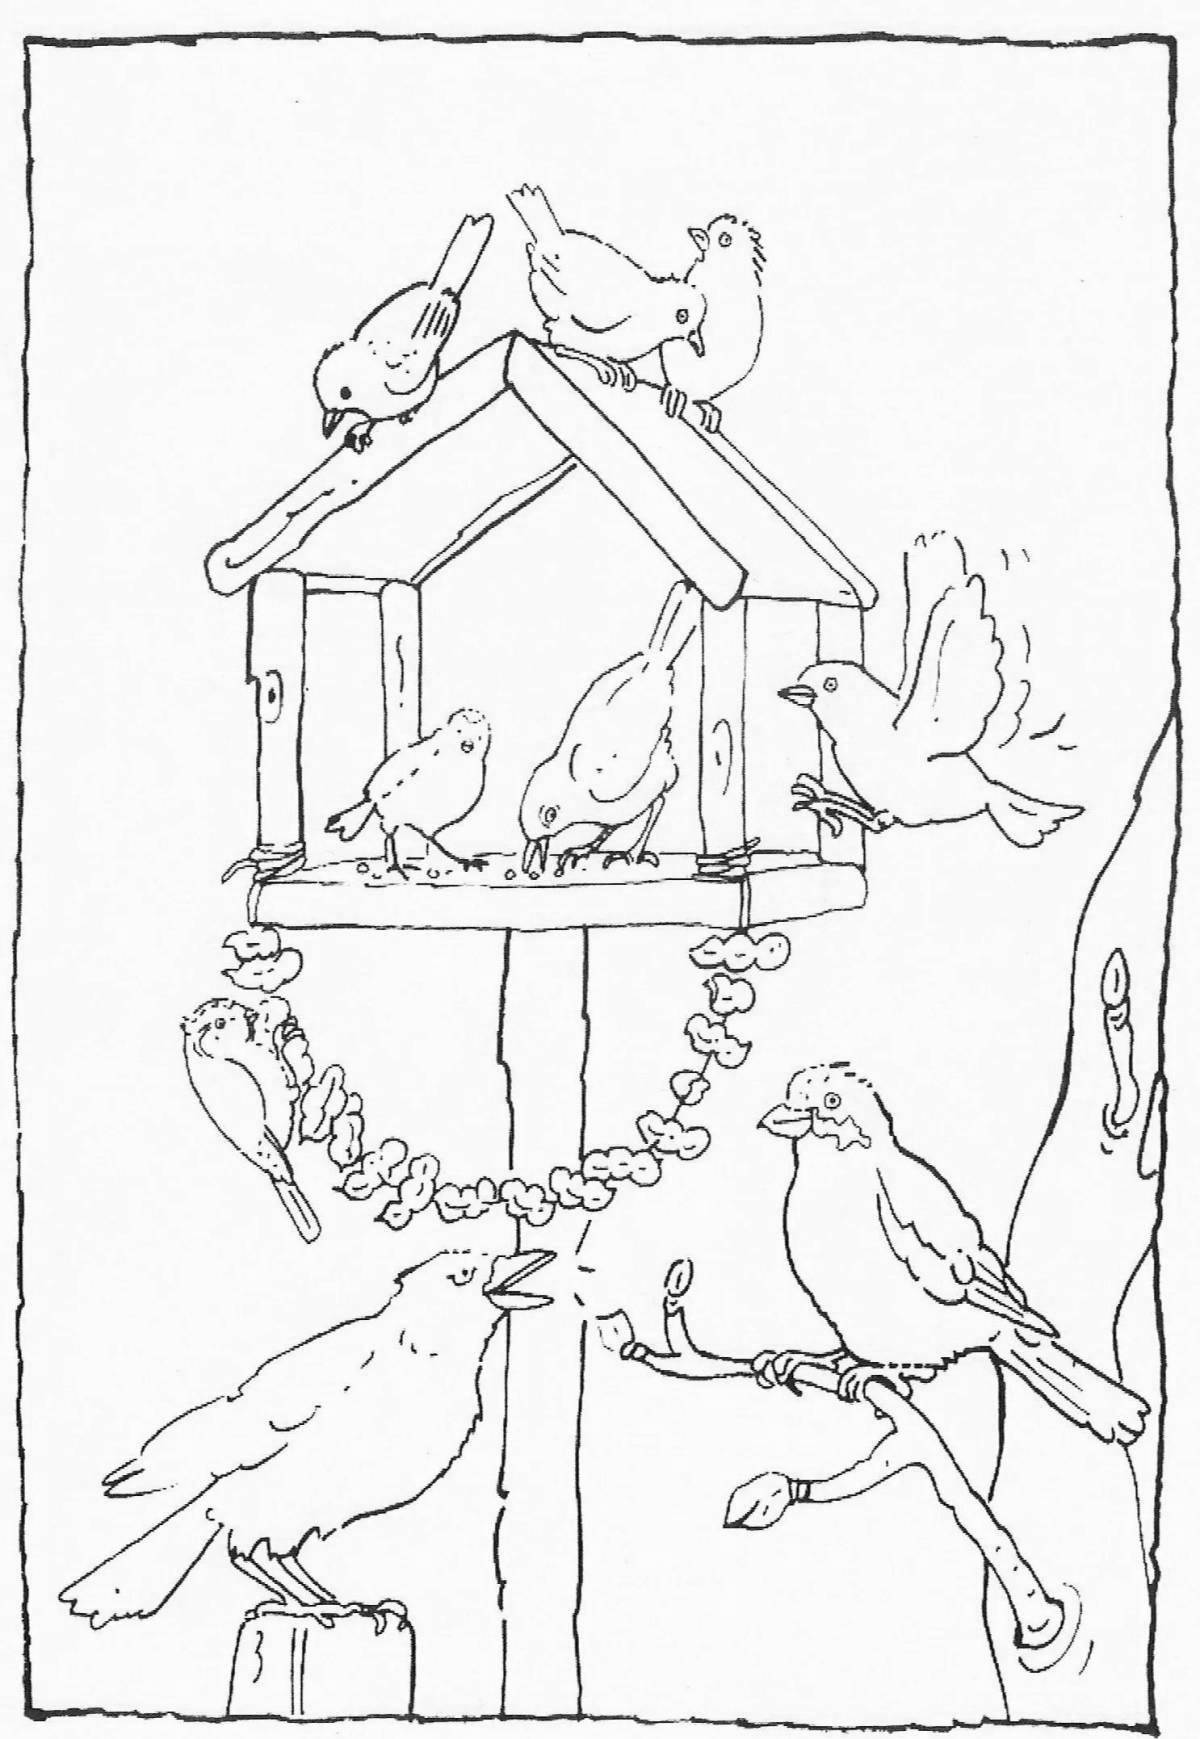 A fun bird feeder coloring book for preschoolers